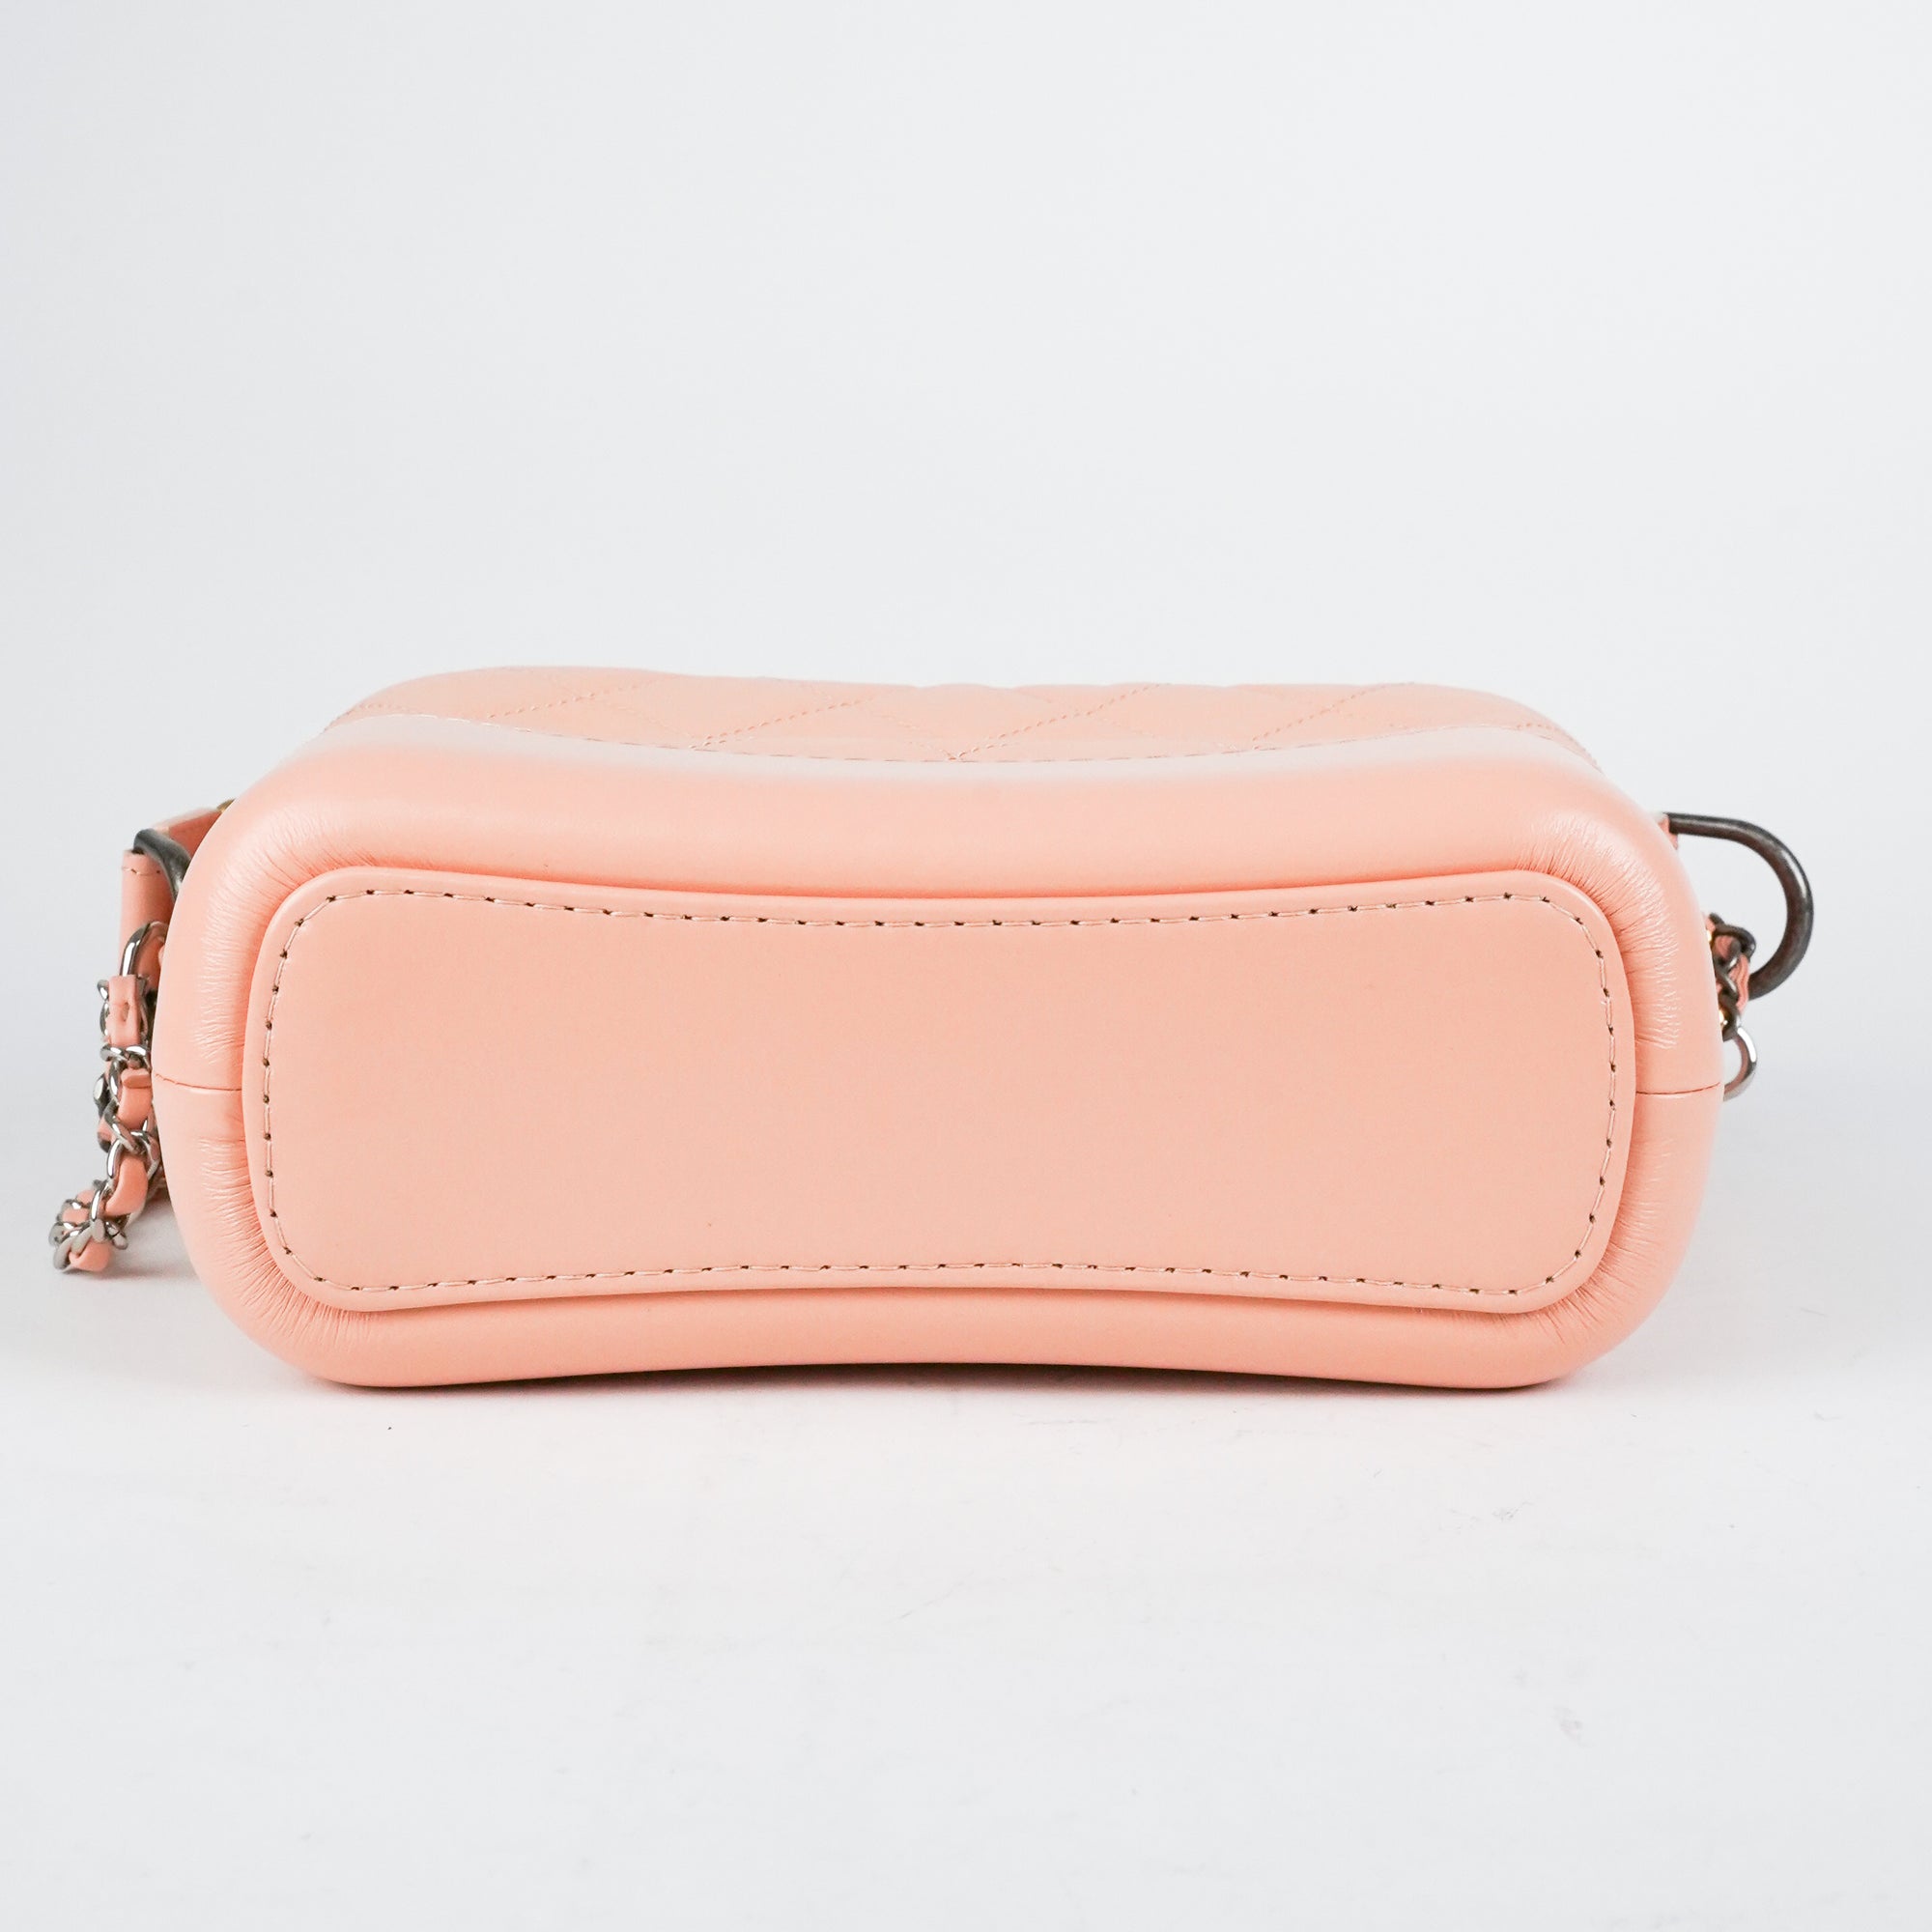 Chanel Gabrielle Small Bag Pink - THE PURSE AFFAIR